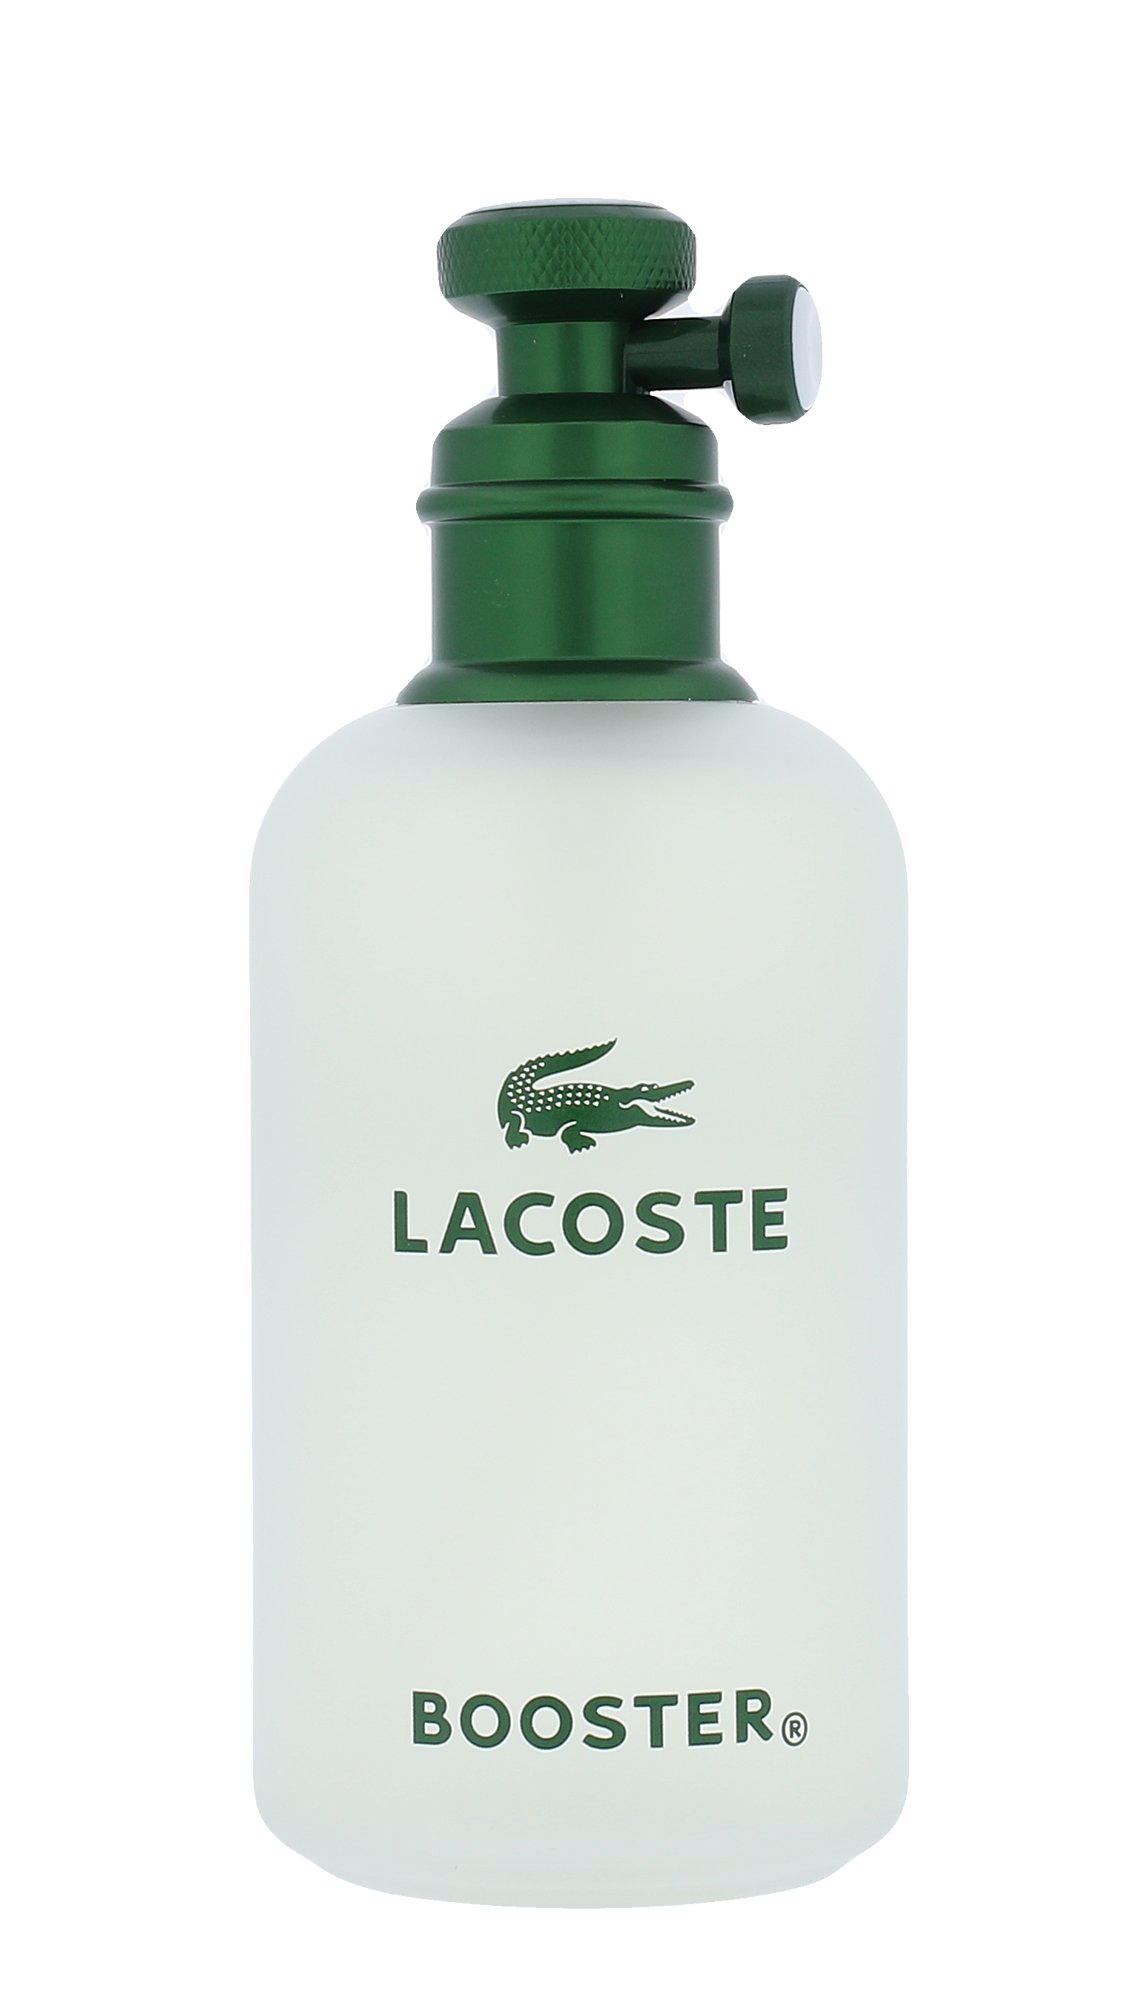 Lacoste Booster, Toaletní voda 125ml